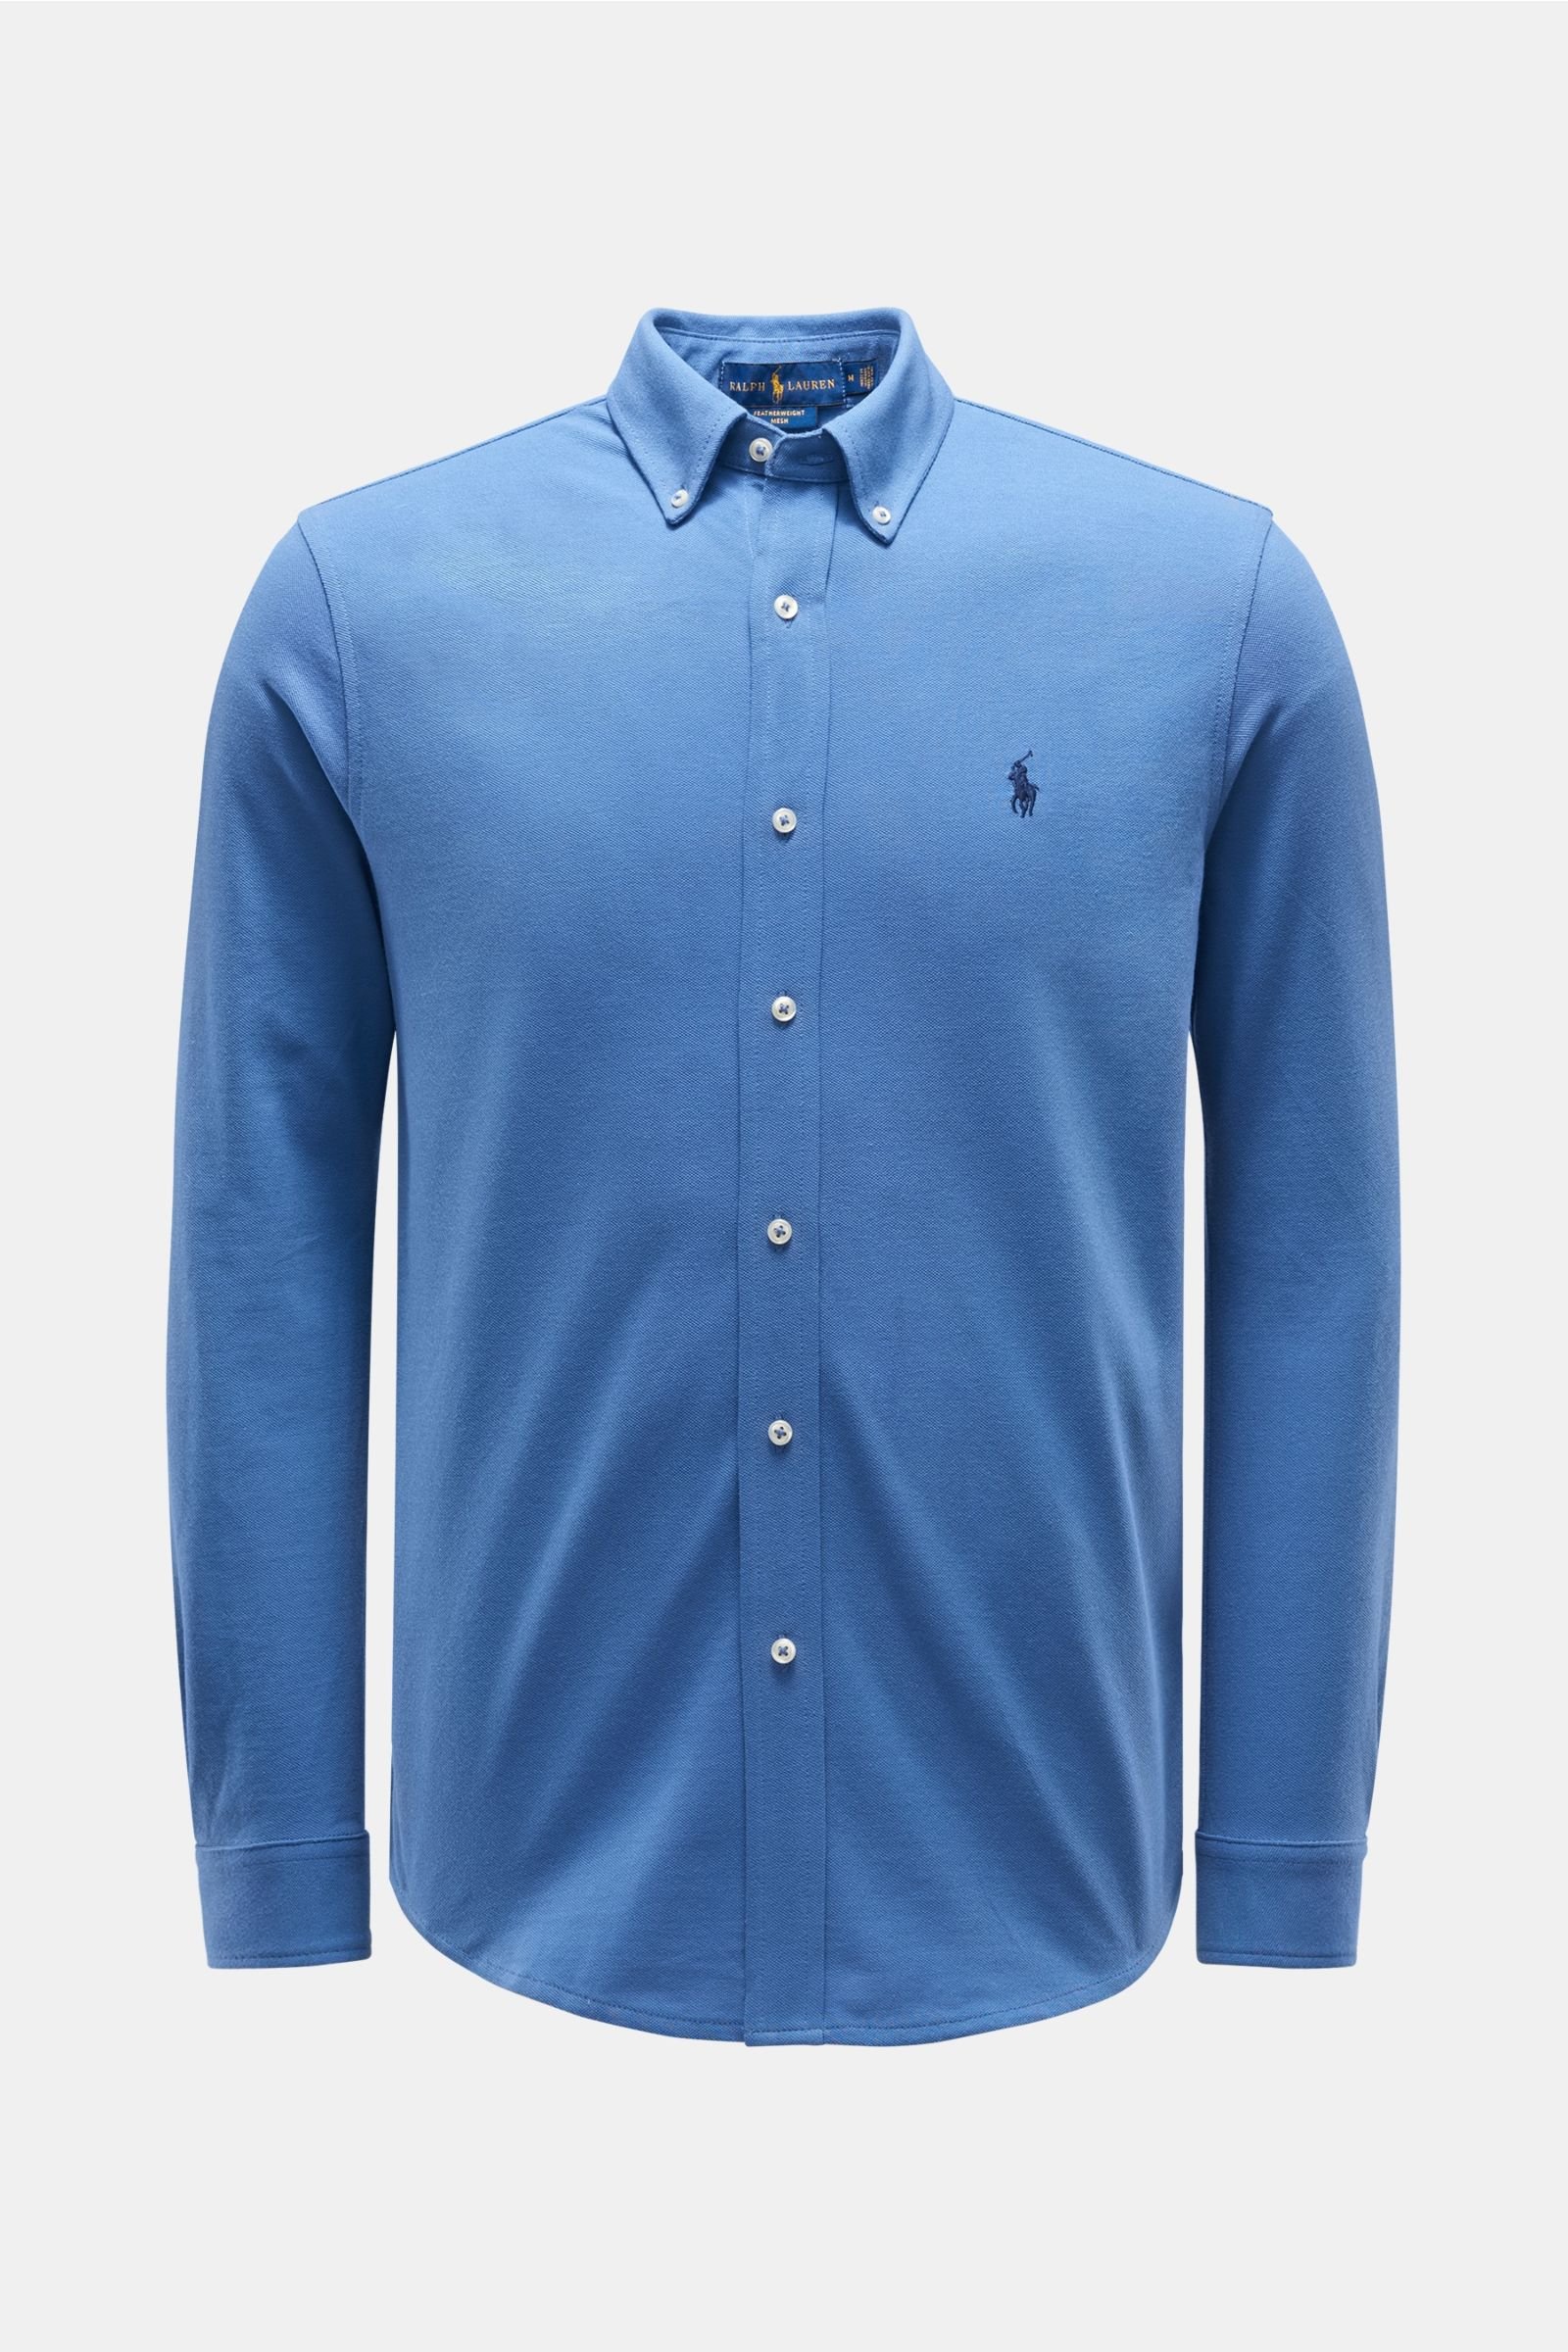 Jersey shirt button-down collar grey-blue